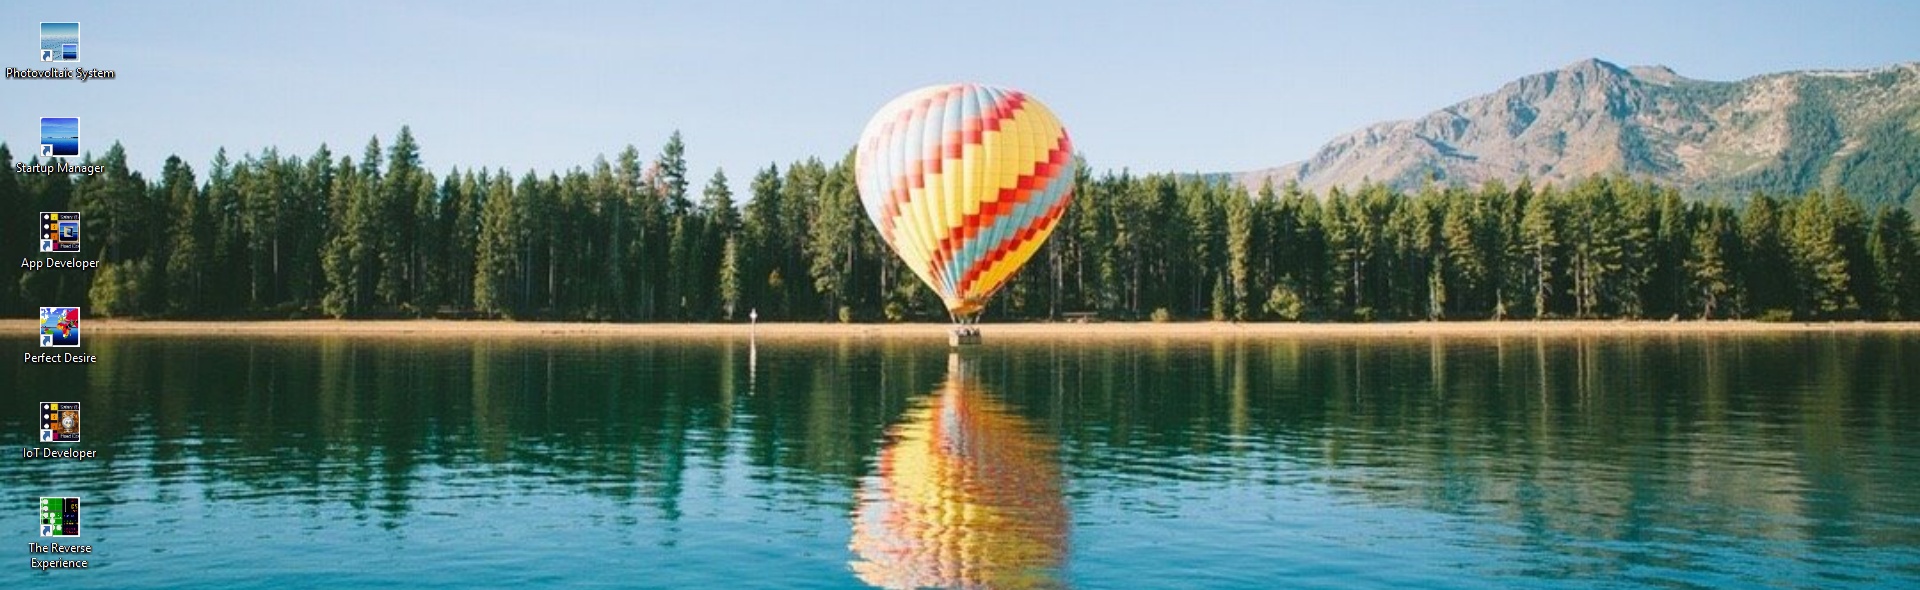 dna-header-balloon-over-lake